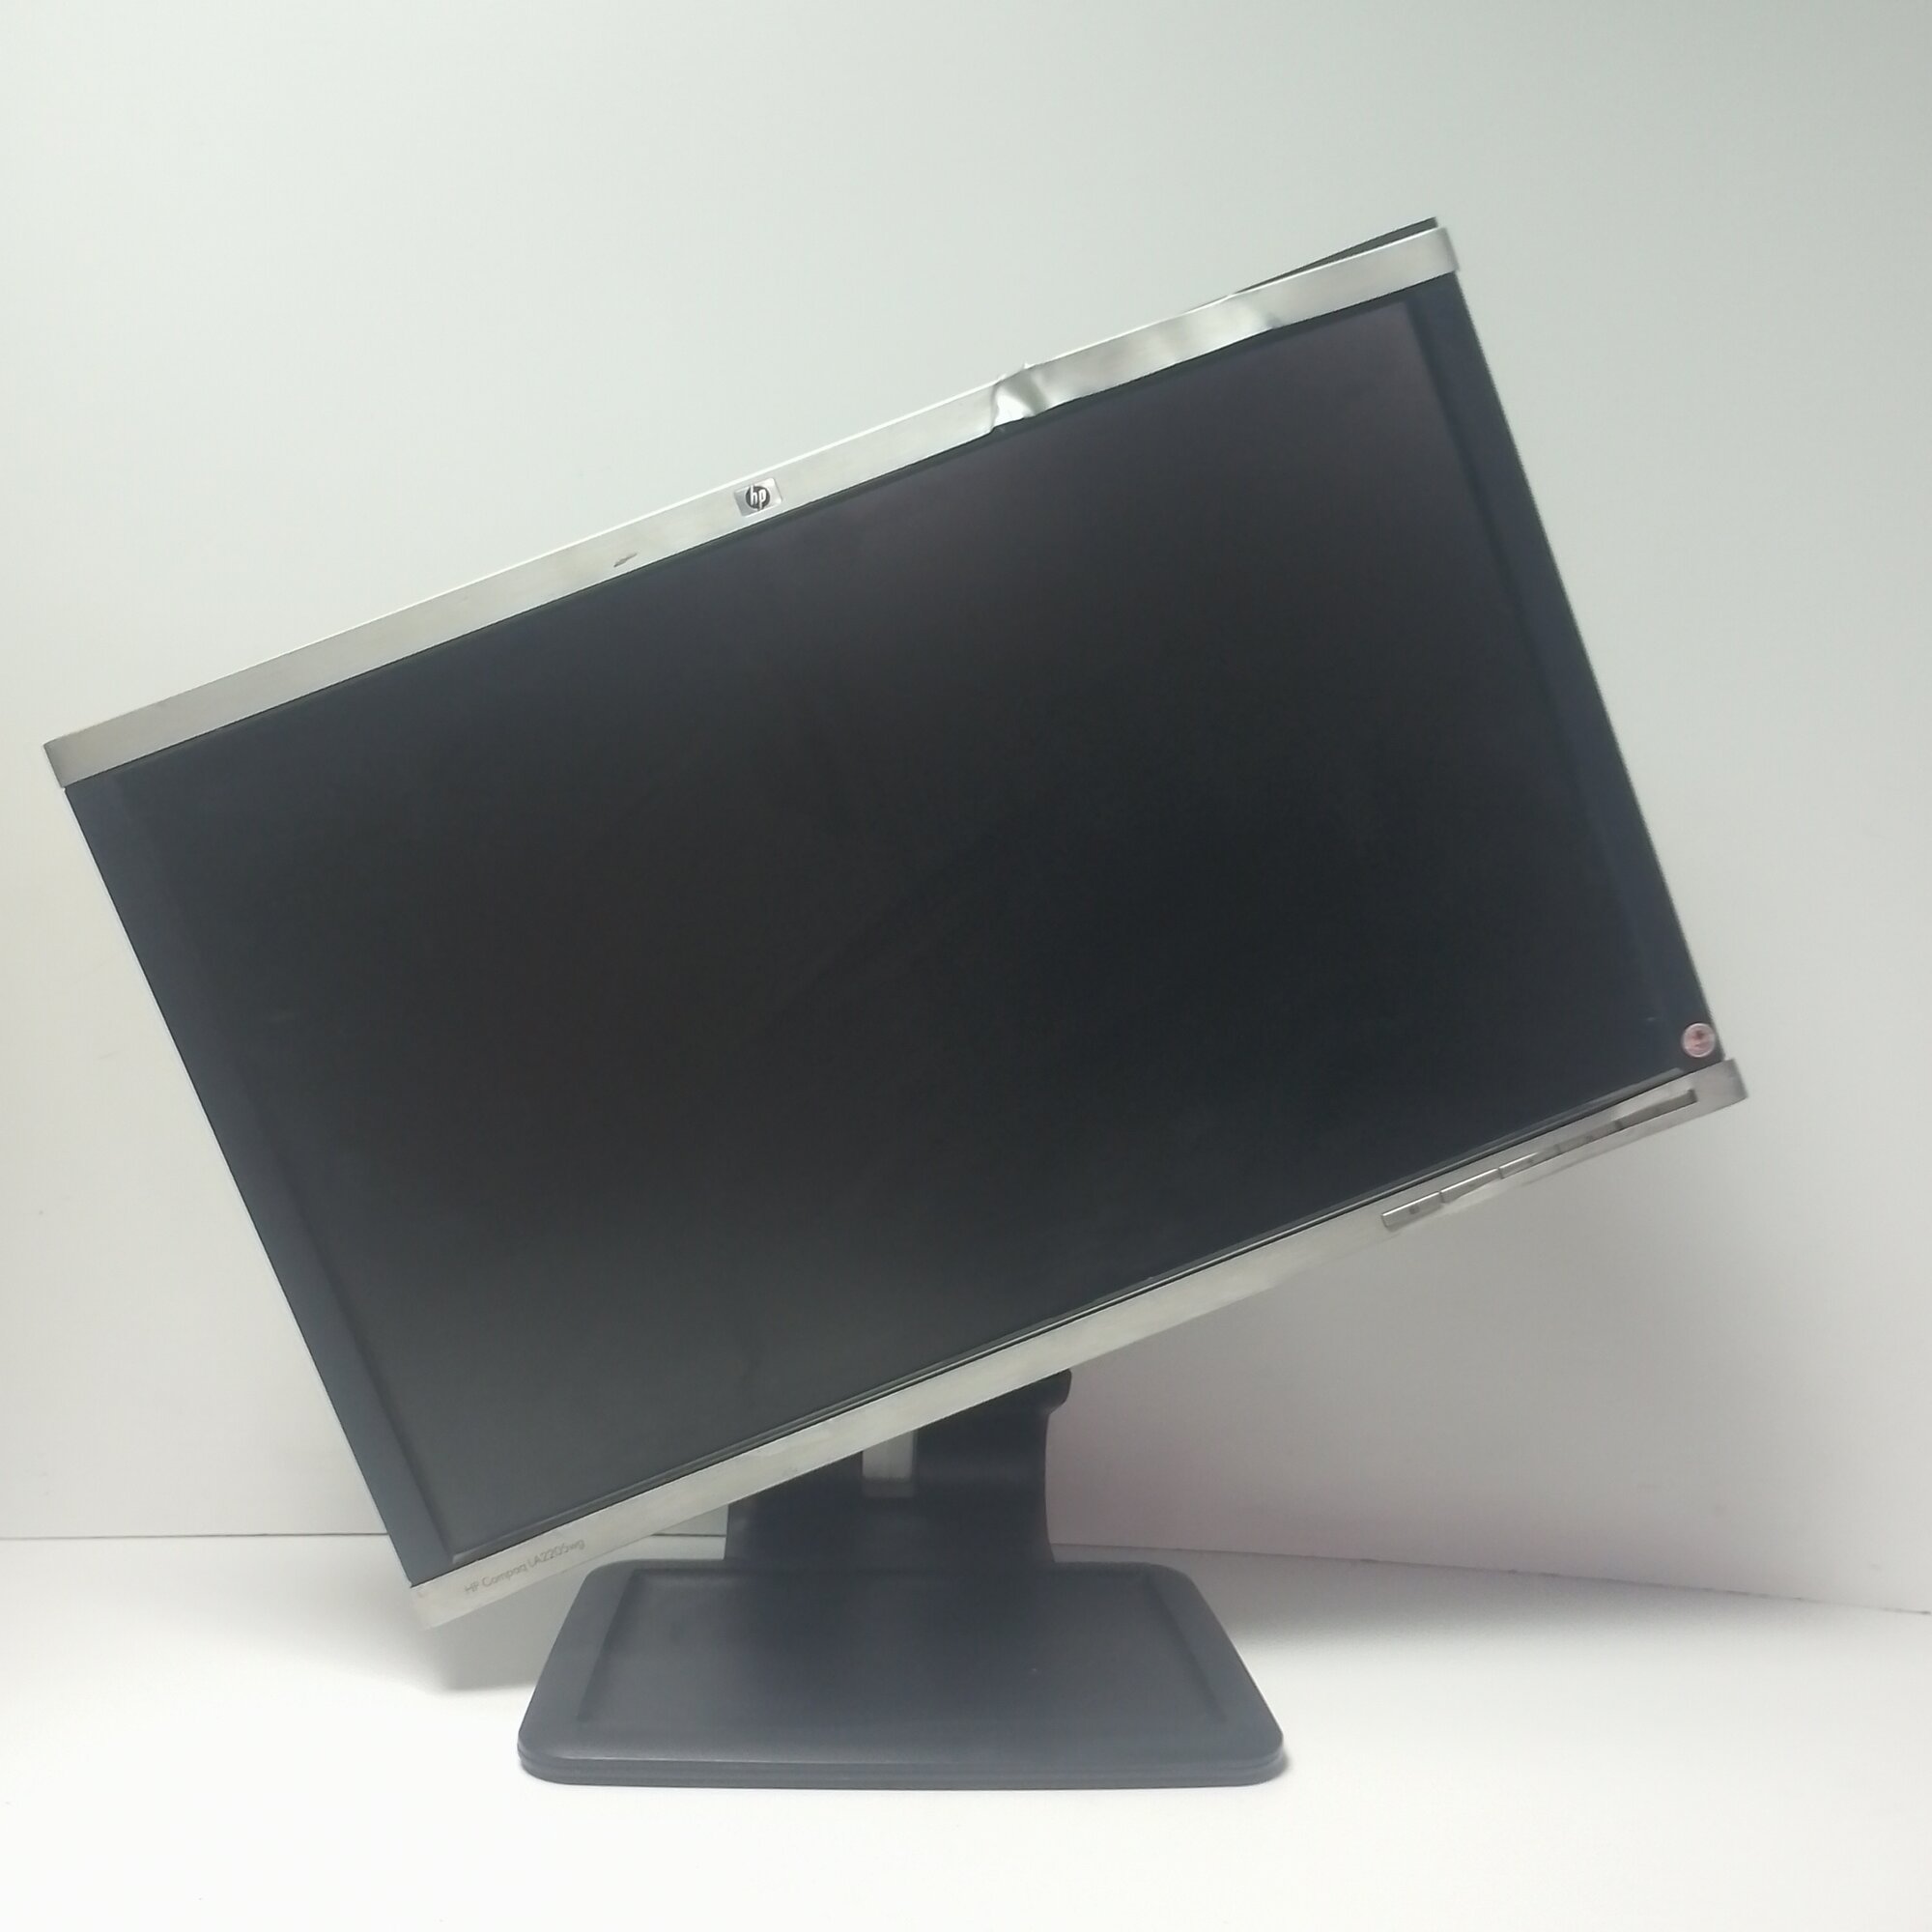 22" ЖК монитор HP LA2205wg с поворотом экрана (LCD, 1680x1050, D-Sub, DVI, DP, USB2.0 Hub)